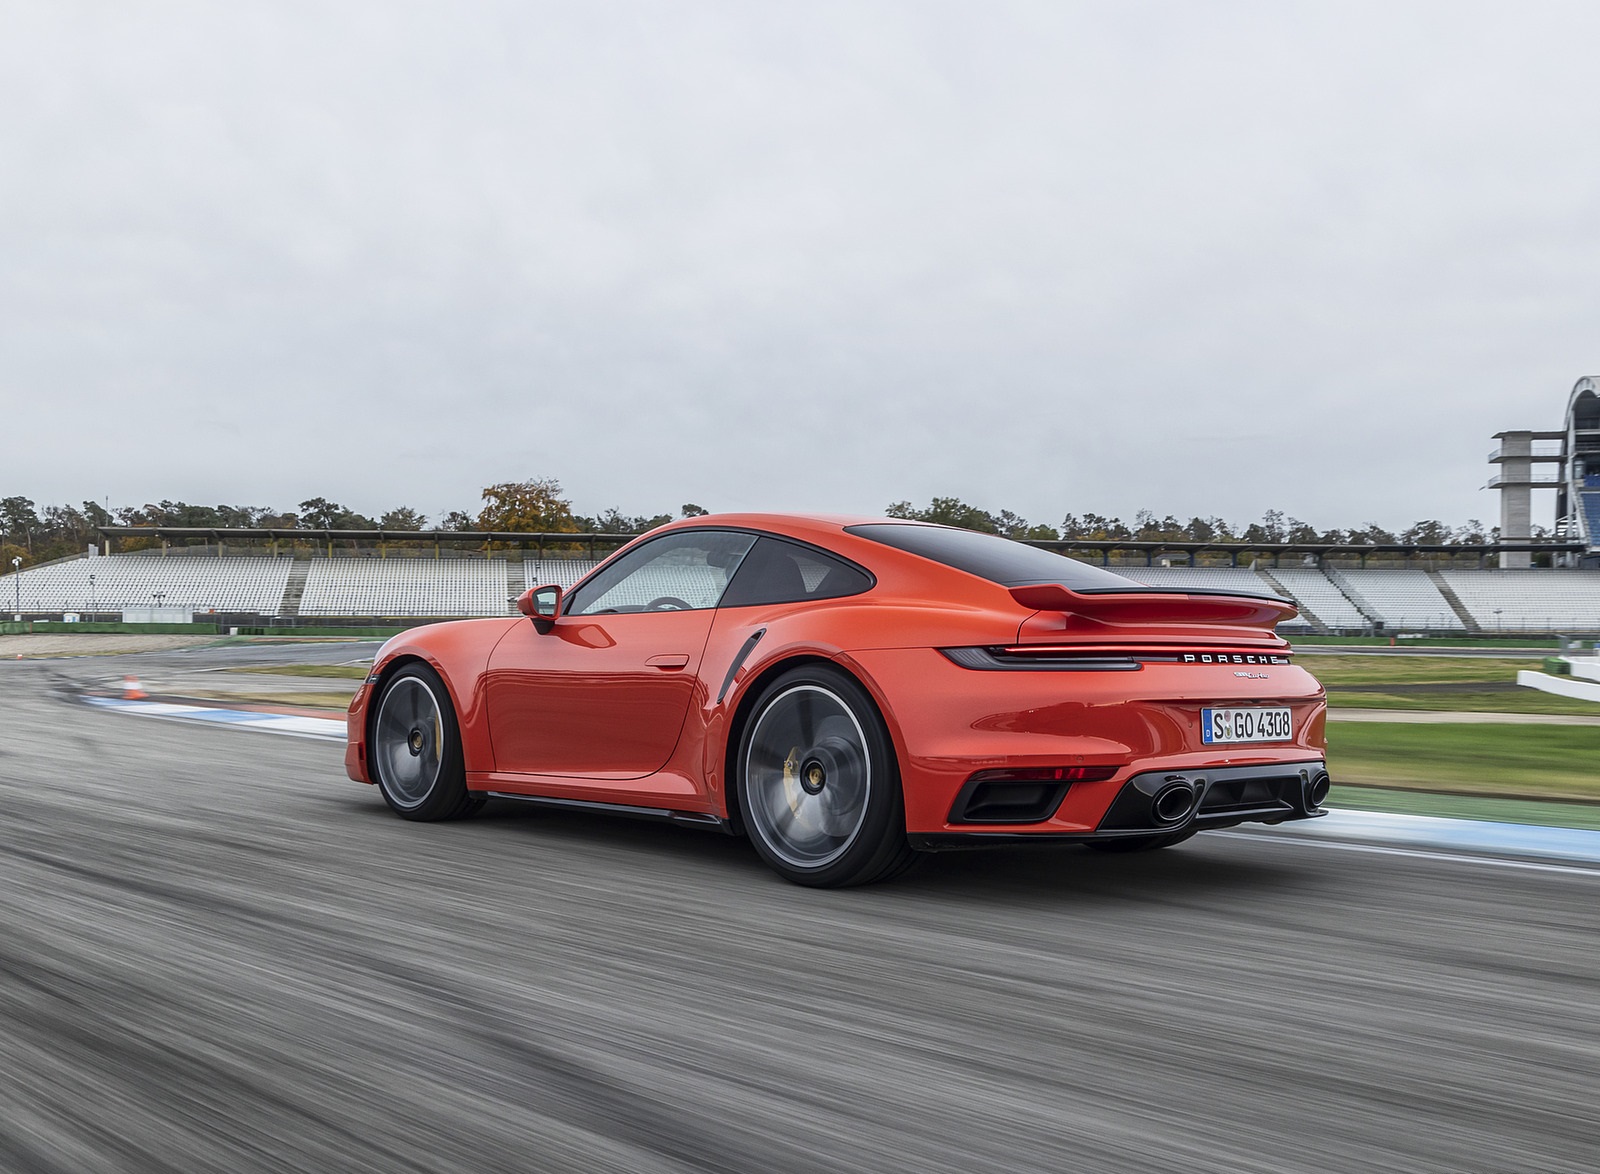 2021 Porsche 911 Turbo (Color: Lava Orange) Rear Three-Quarter Wallpapers  #73 of 225